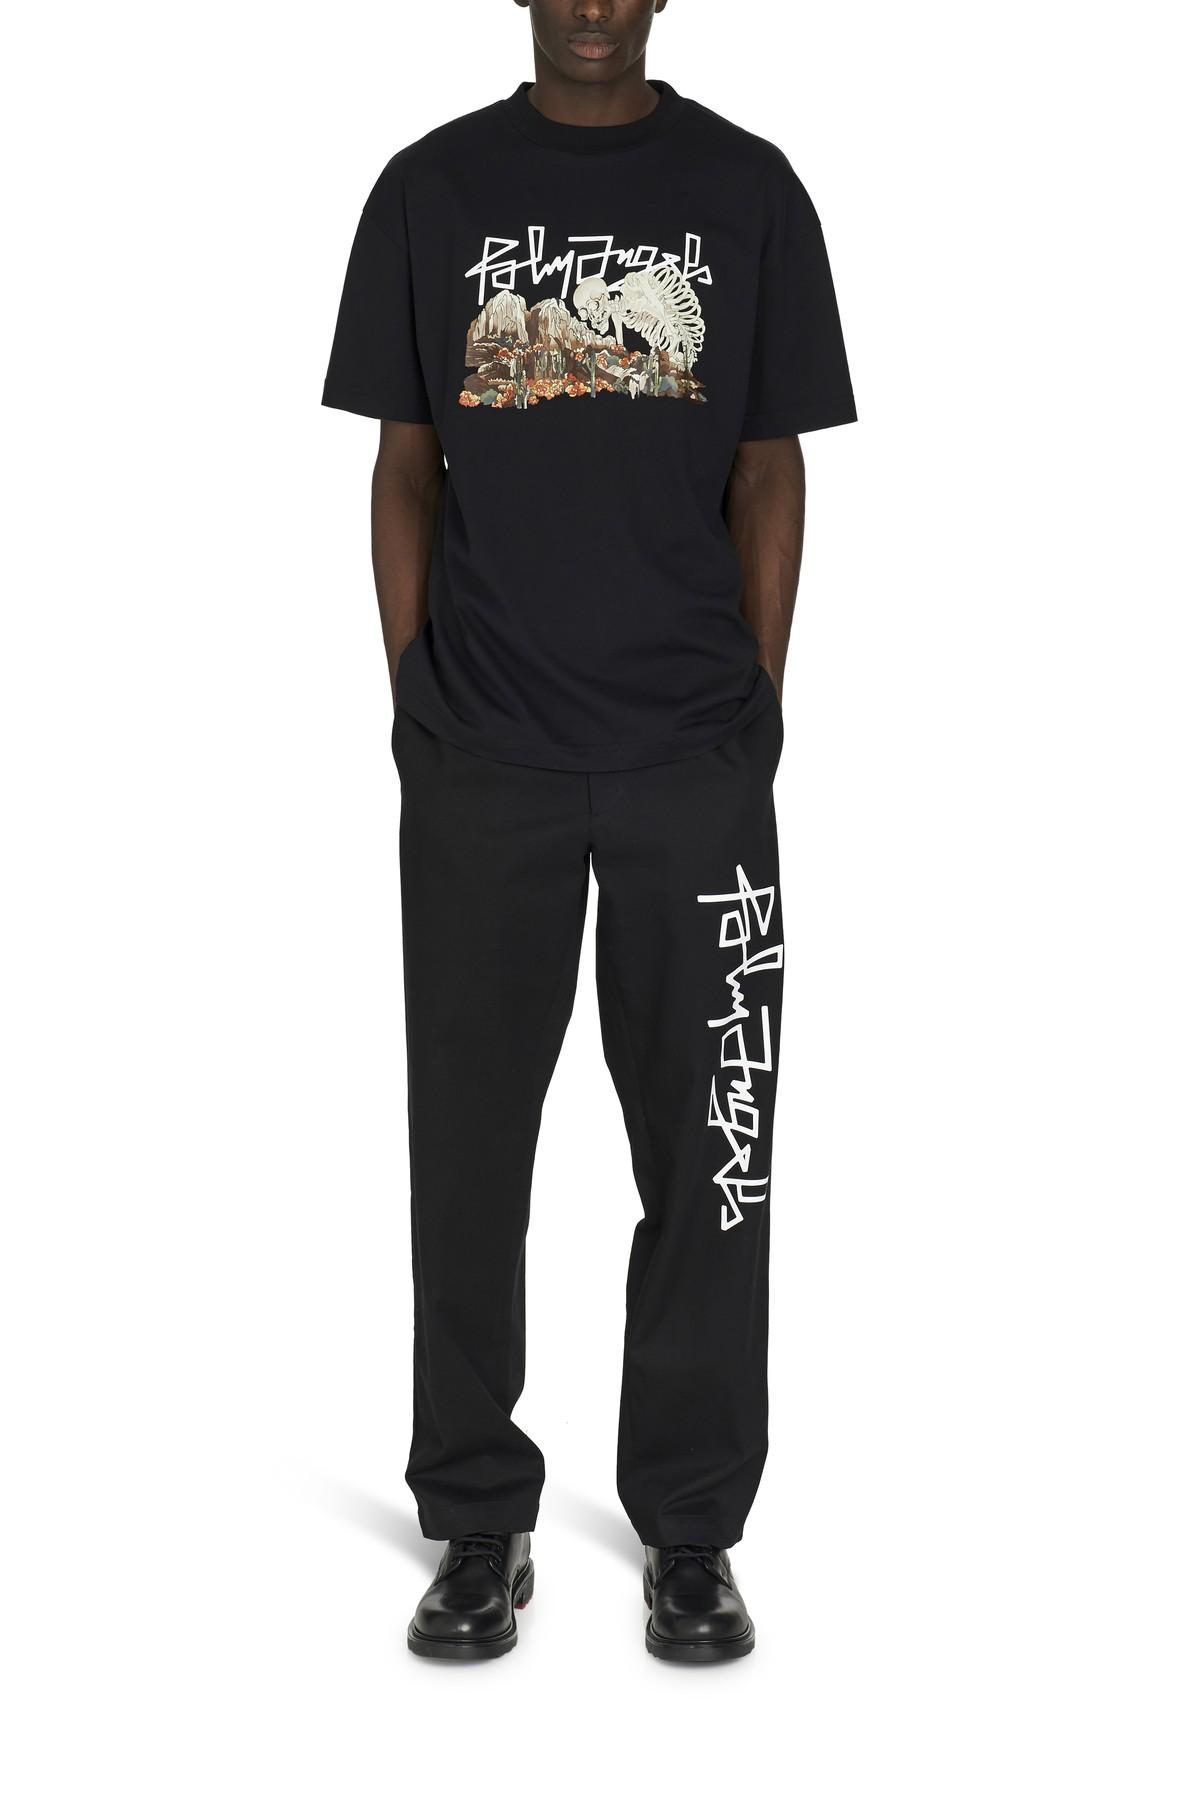 Palm Angels Desert Skull T-shirt in Black for Men - Lyst